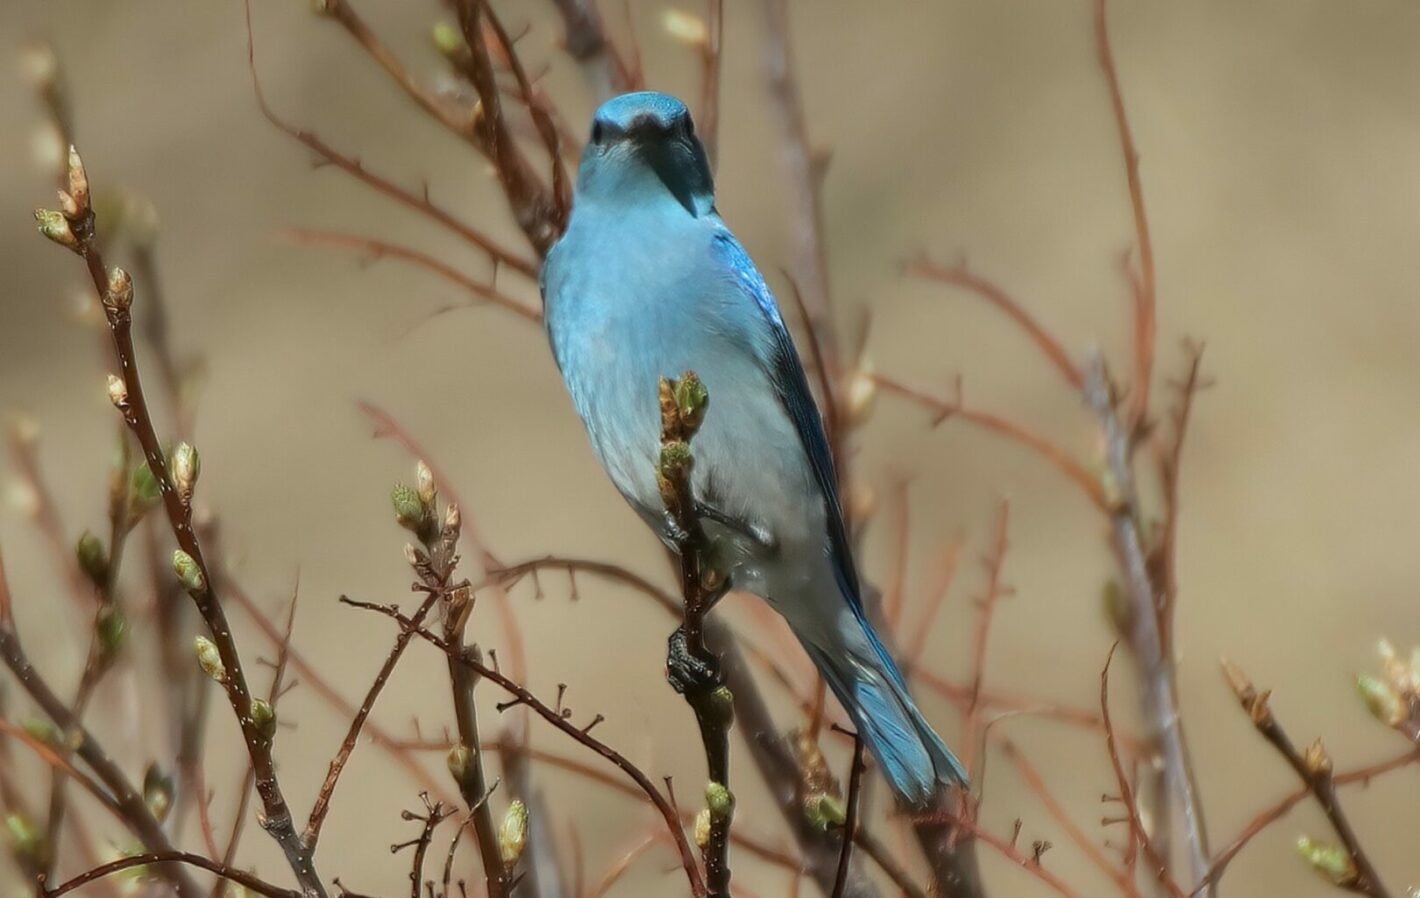 The 1st Bluebird (Elaine)